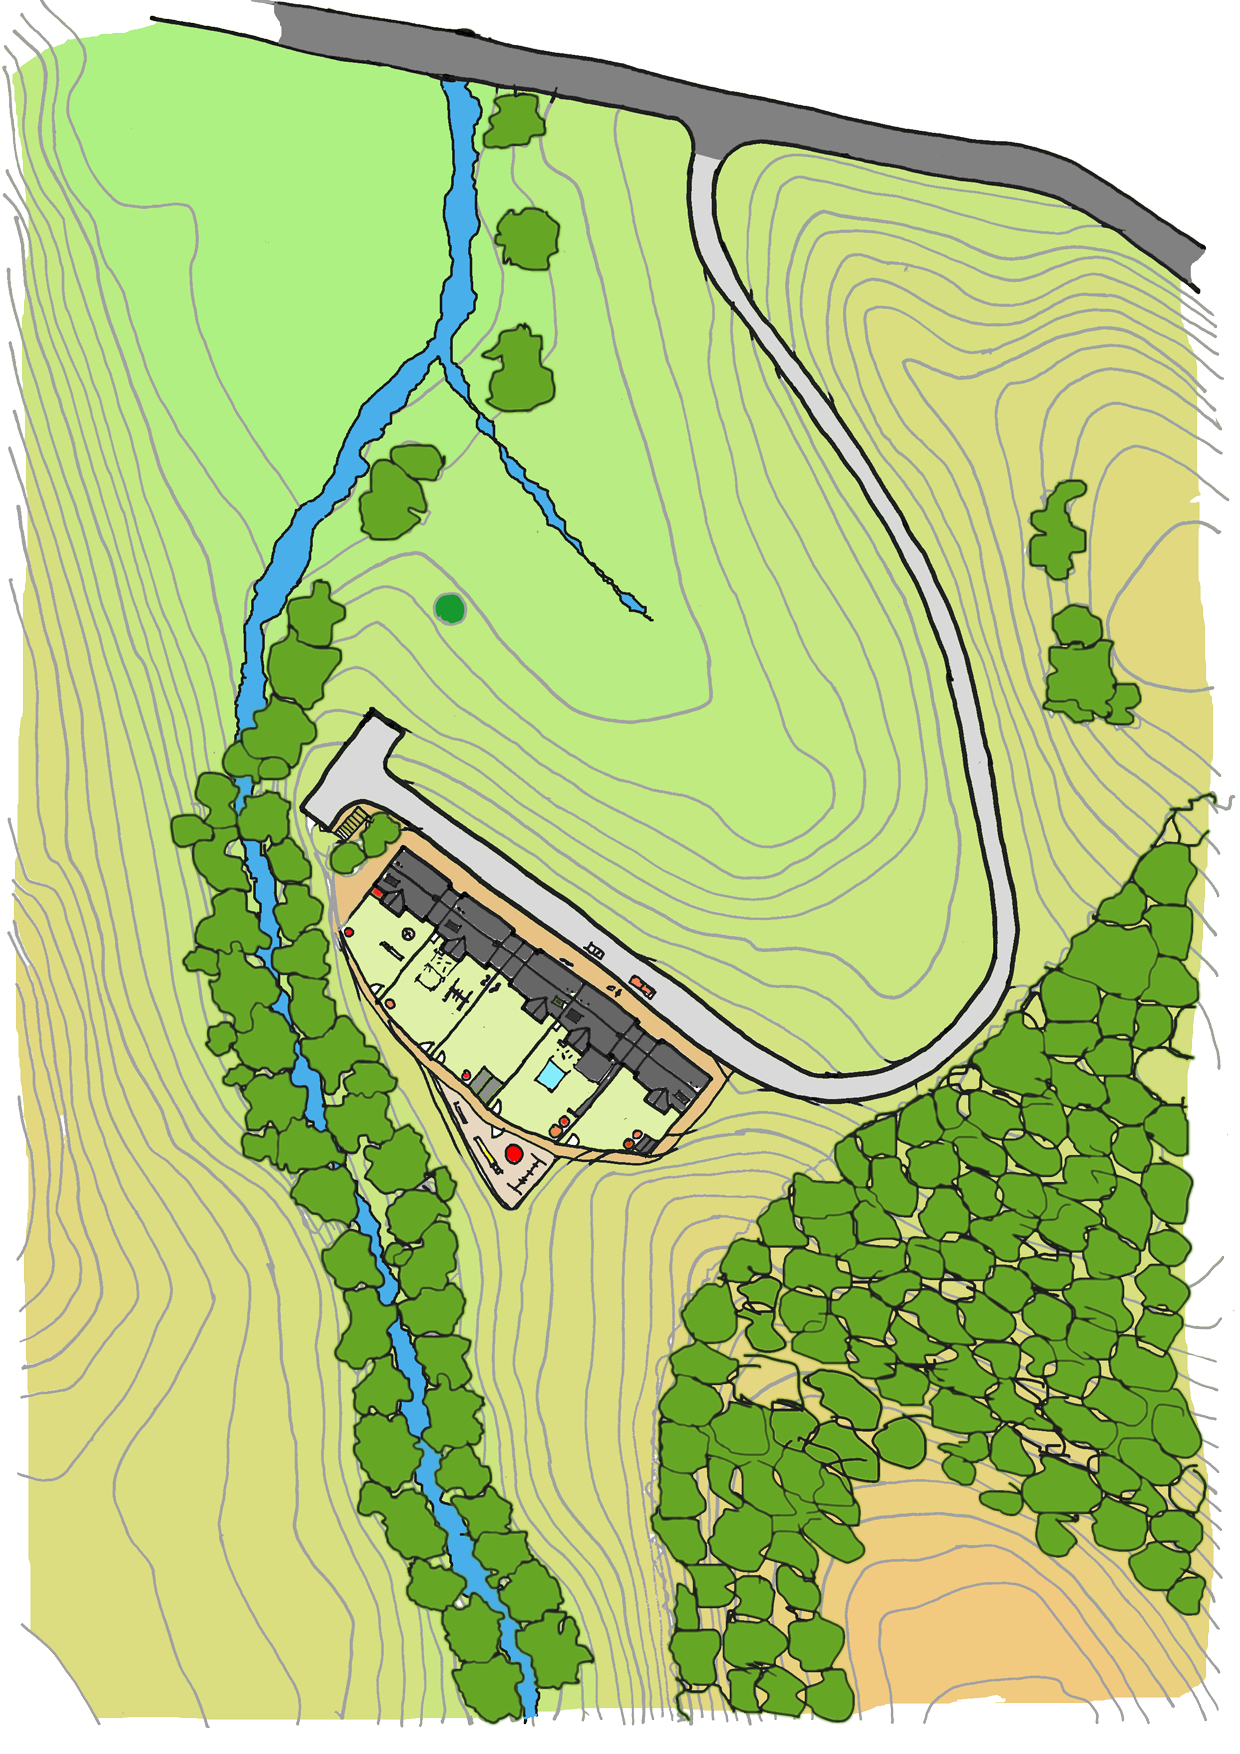 West Ardhu - Site plan